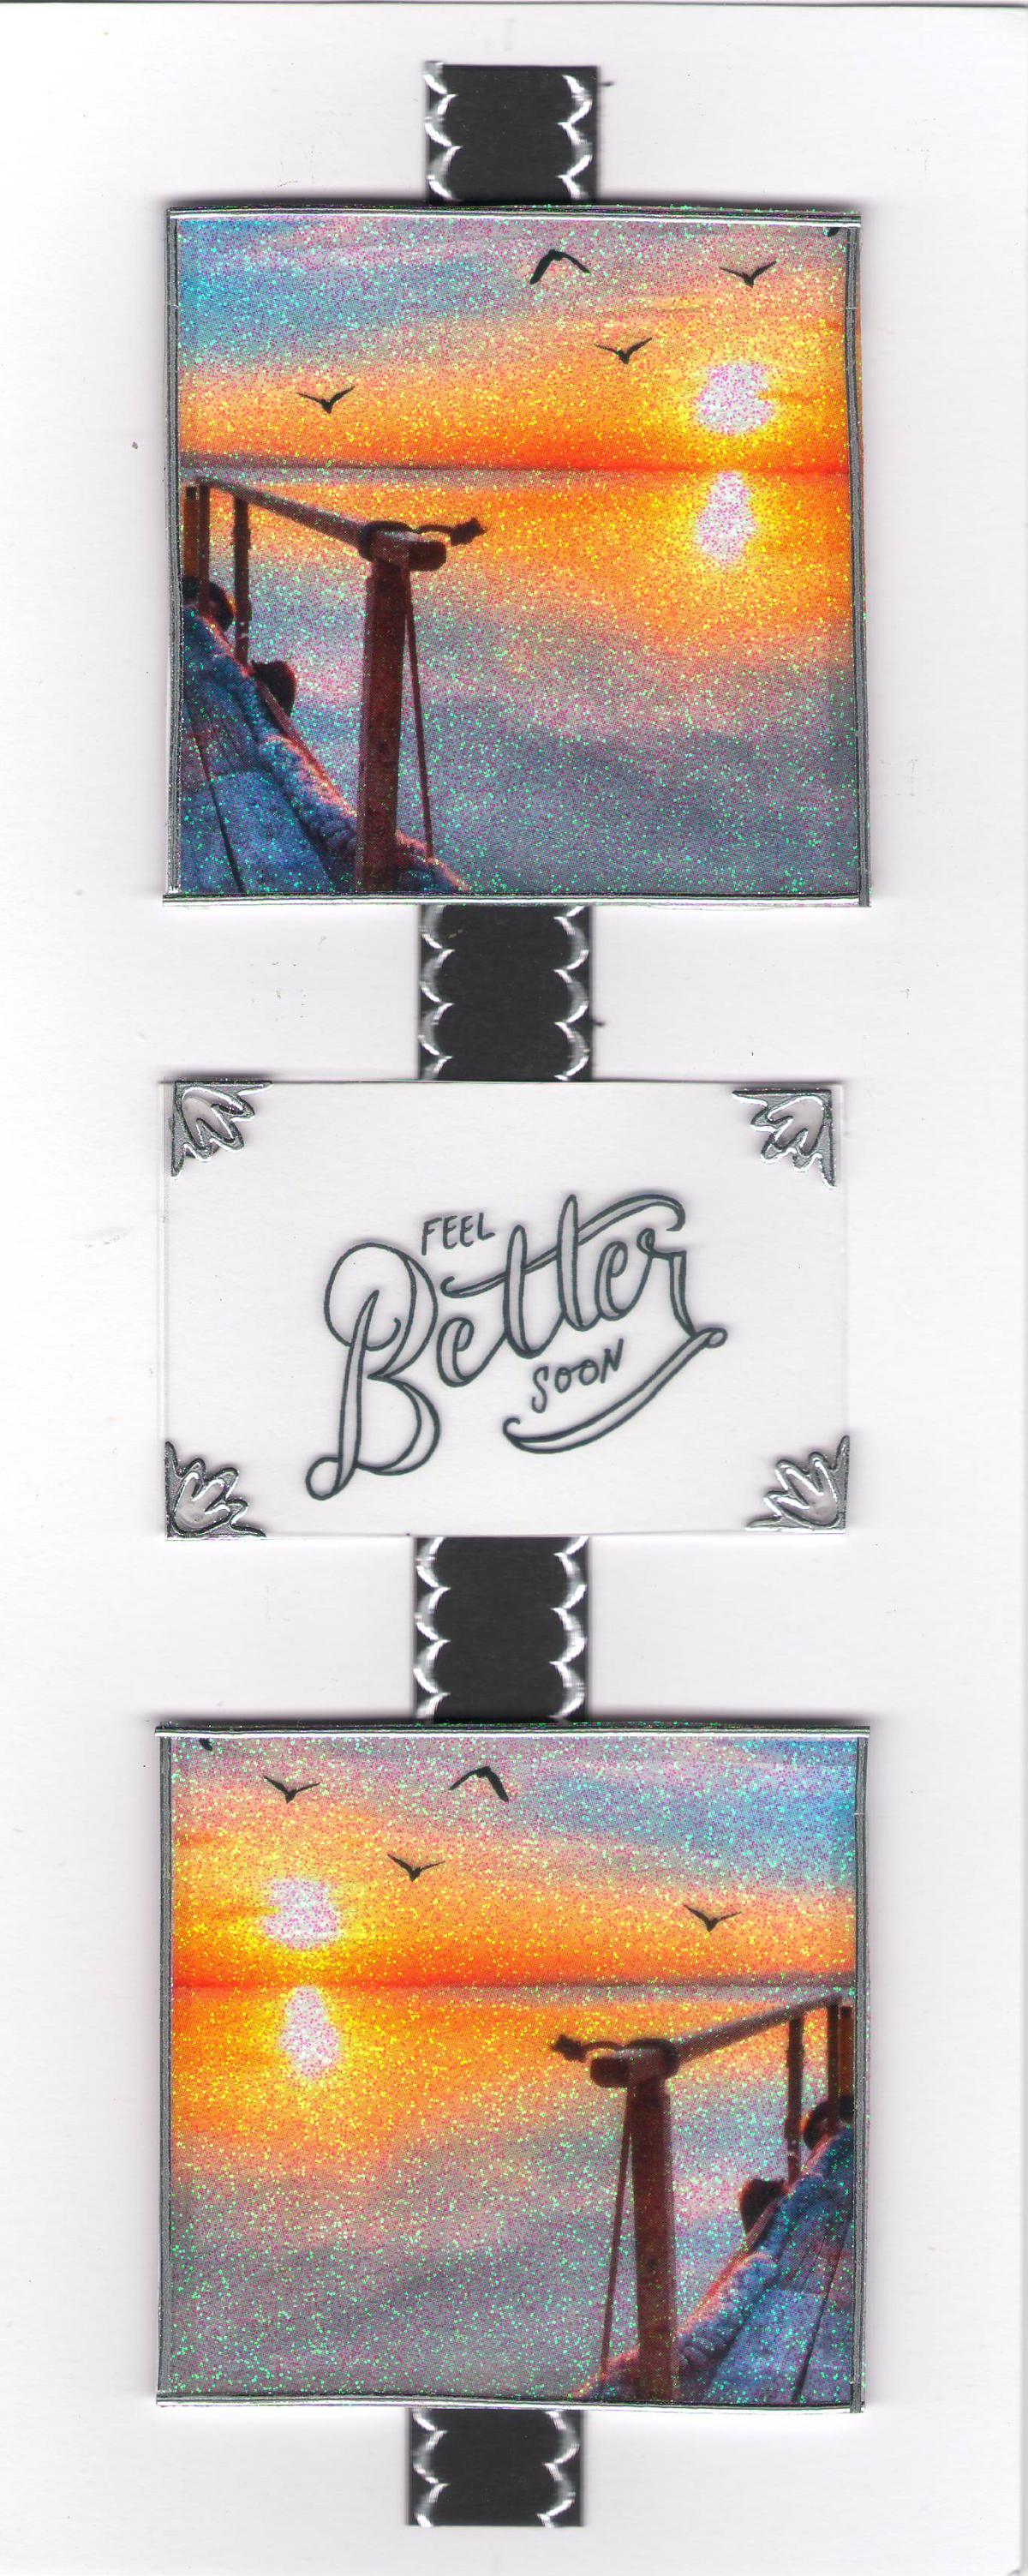 GlitterFilm & Vintage Hues 12 Slimline Card Kit Sunset Seagulls Get Well